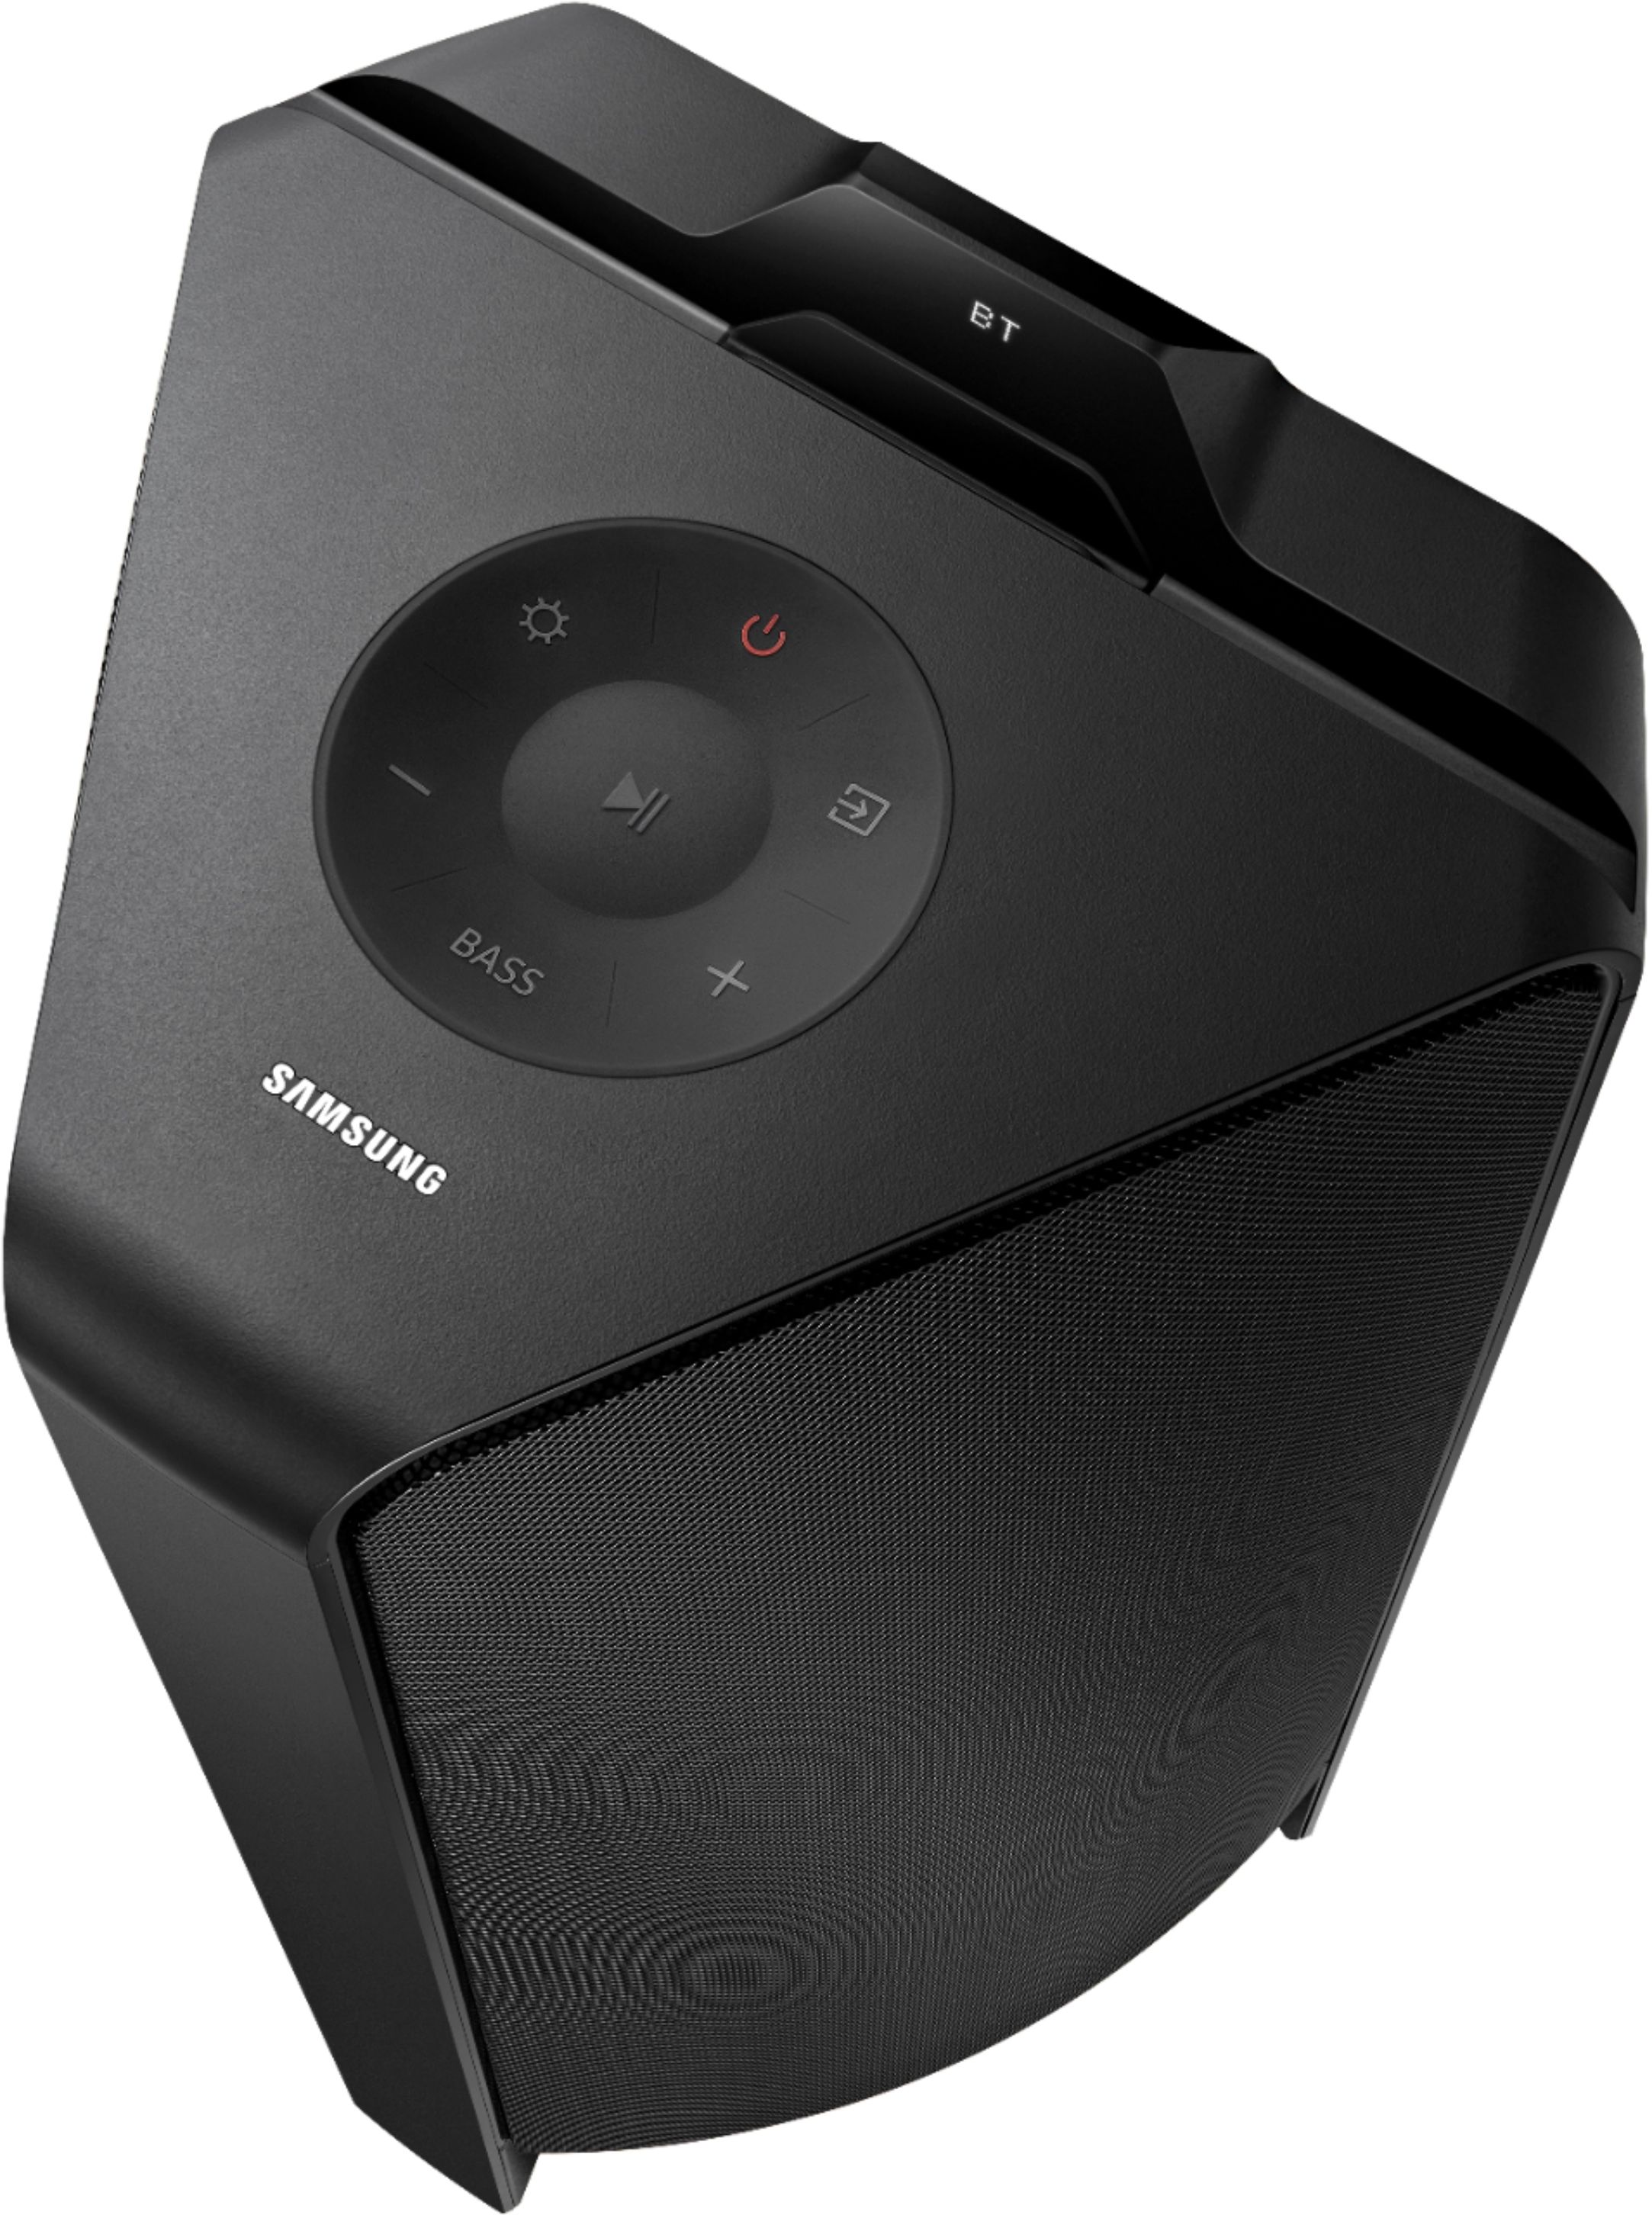 Hoogland mond Wardianzaak Samsung Sound Tower Powered Wireless Speaker (Each) Black MX-T70 - Best Buy